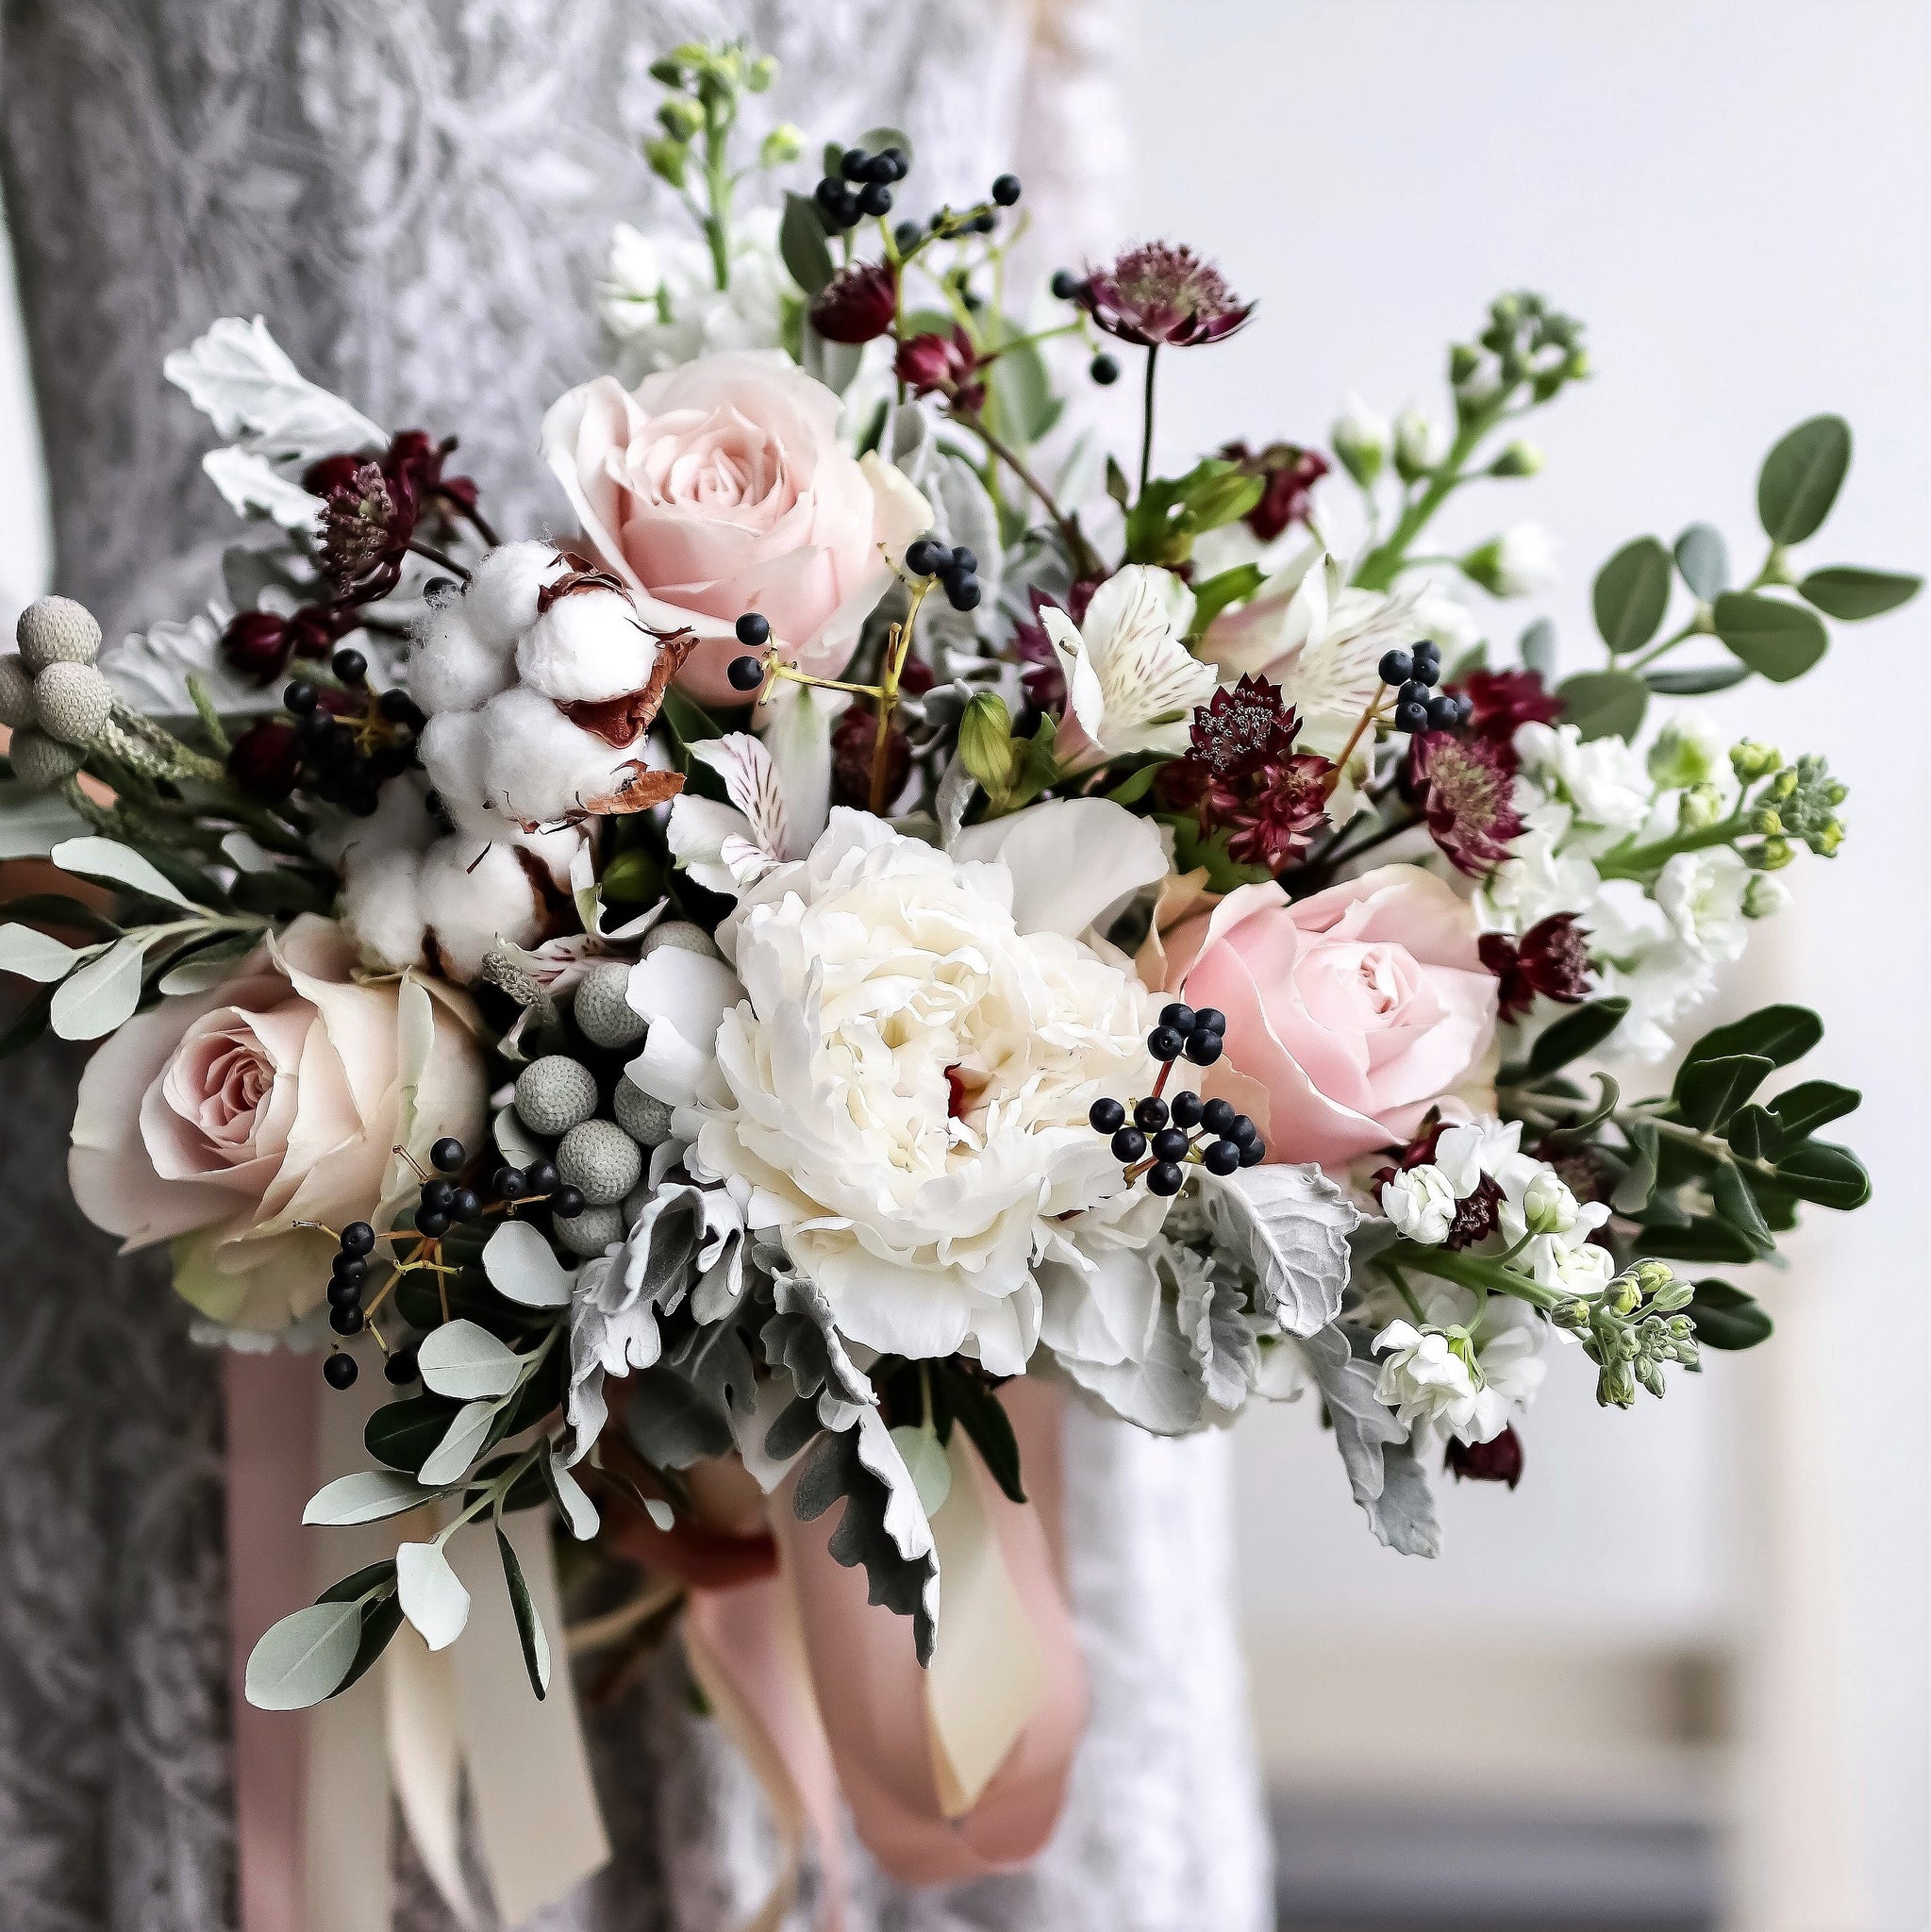 Bridal bouquet (premium) - Kesed creates